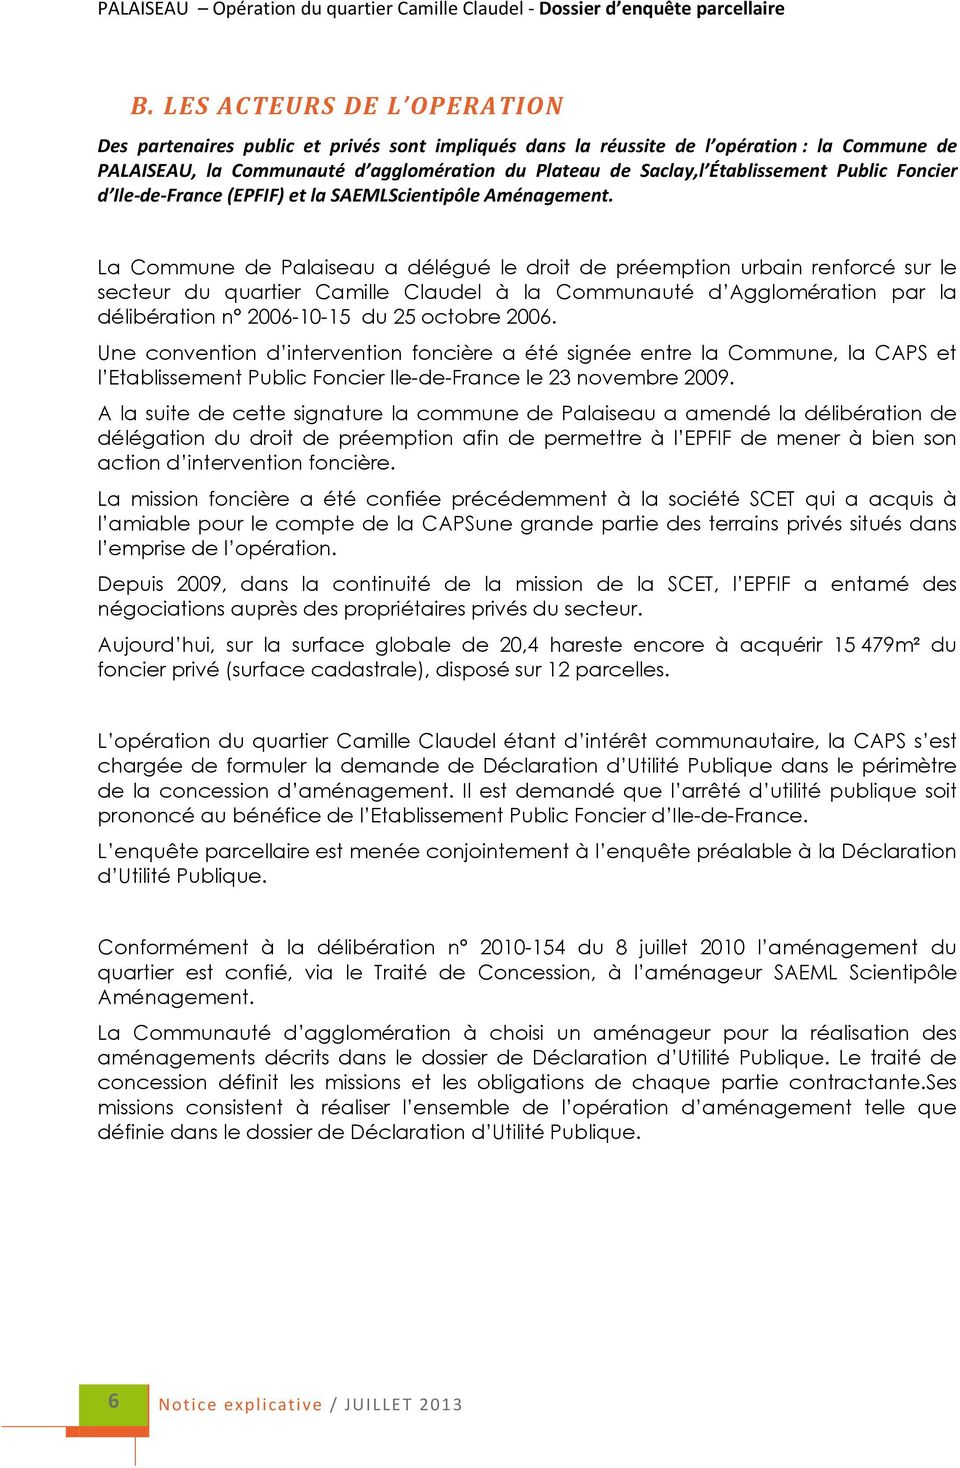 La Commune de Palaiseau a délégué le droit de préemption urbain renforcé sur le secteur du quartier Camille Claudel à la Communauté d Agglomération par la délibération n 2006-10-15 du 25 octobre 2006.